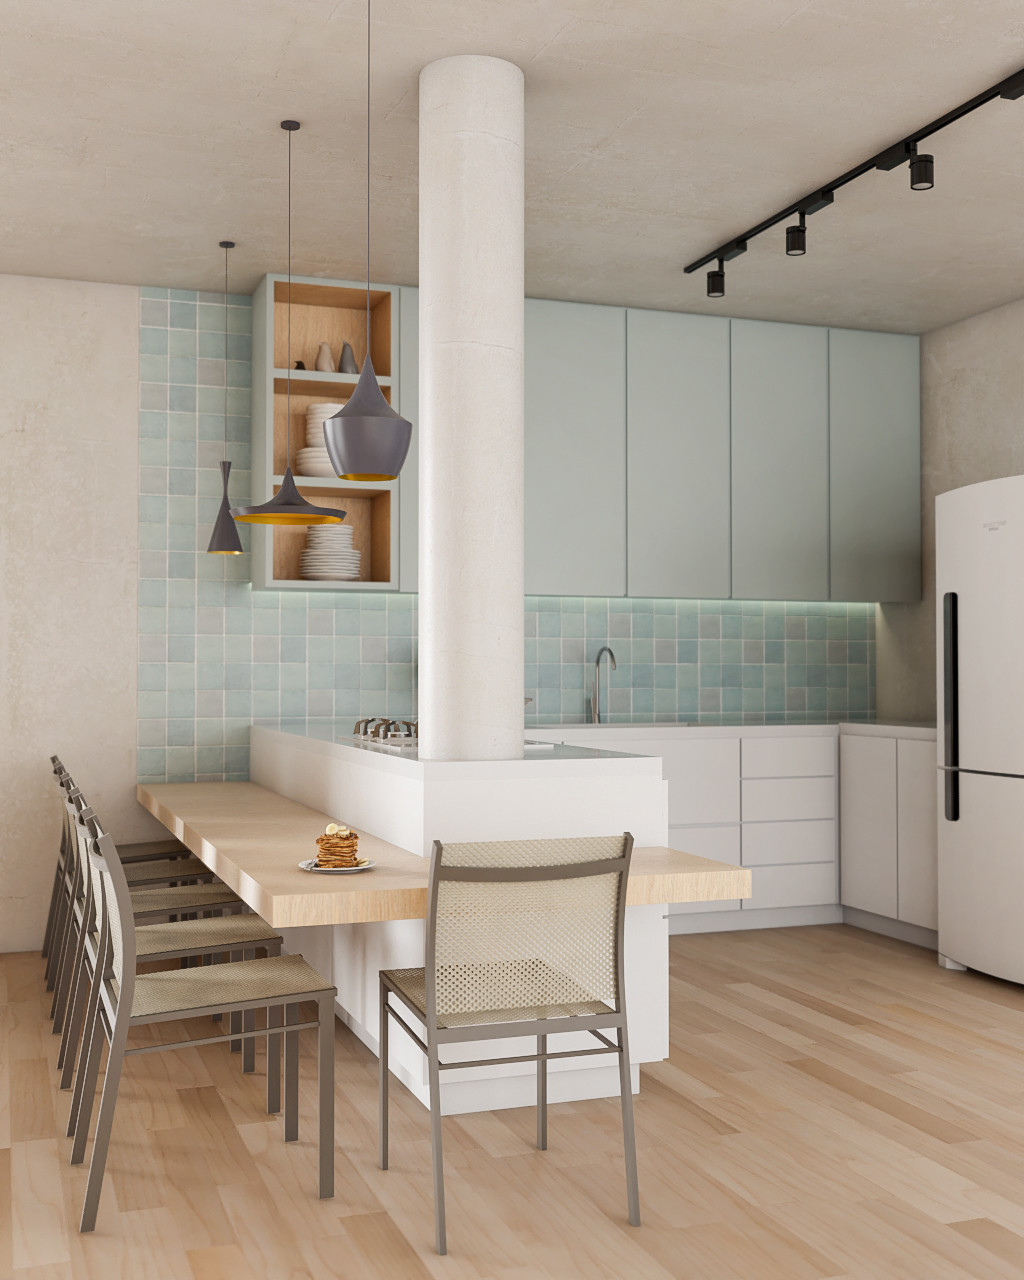 Uma cozinha moderna pode ser composta com uma base neutra e detalhes em Candy Colors, como nessa parede em Casablanca (Projeto: Silvia Miranda)